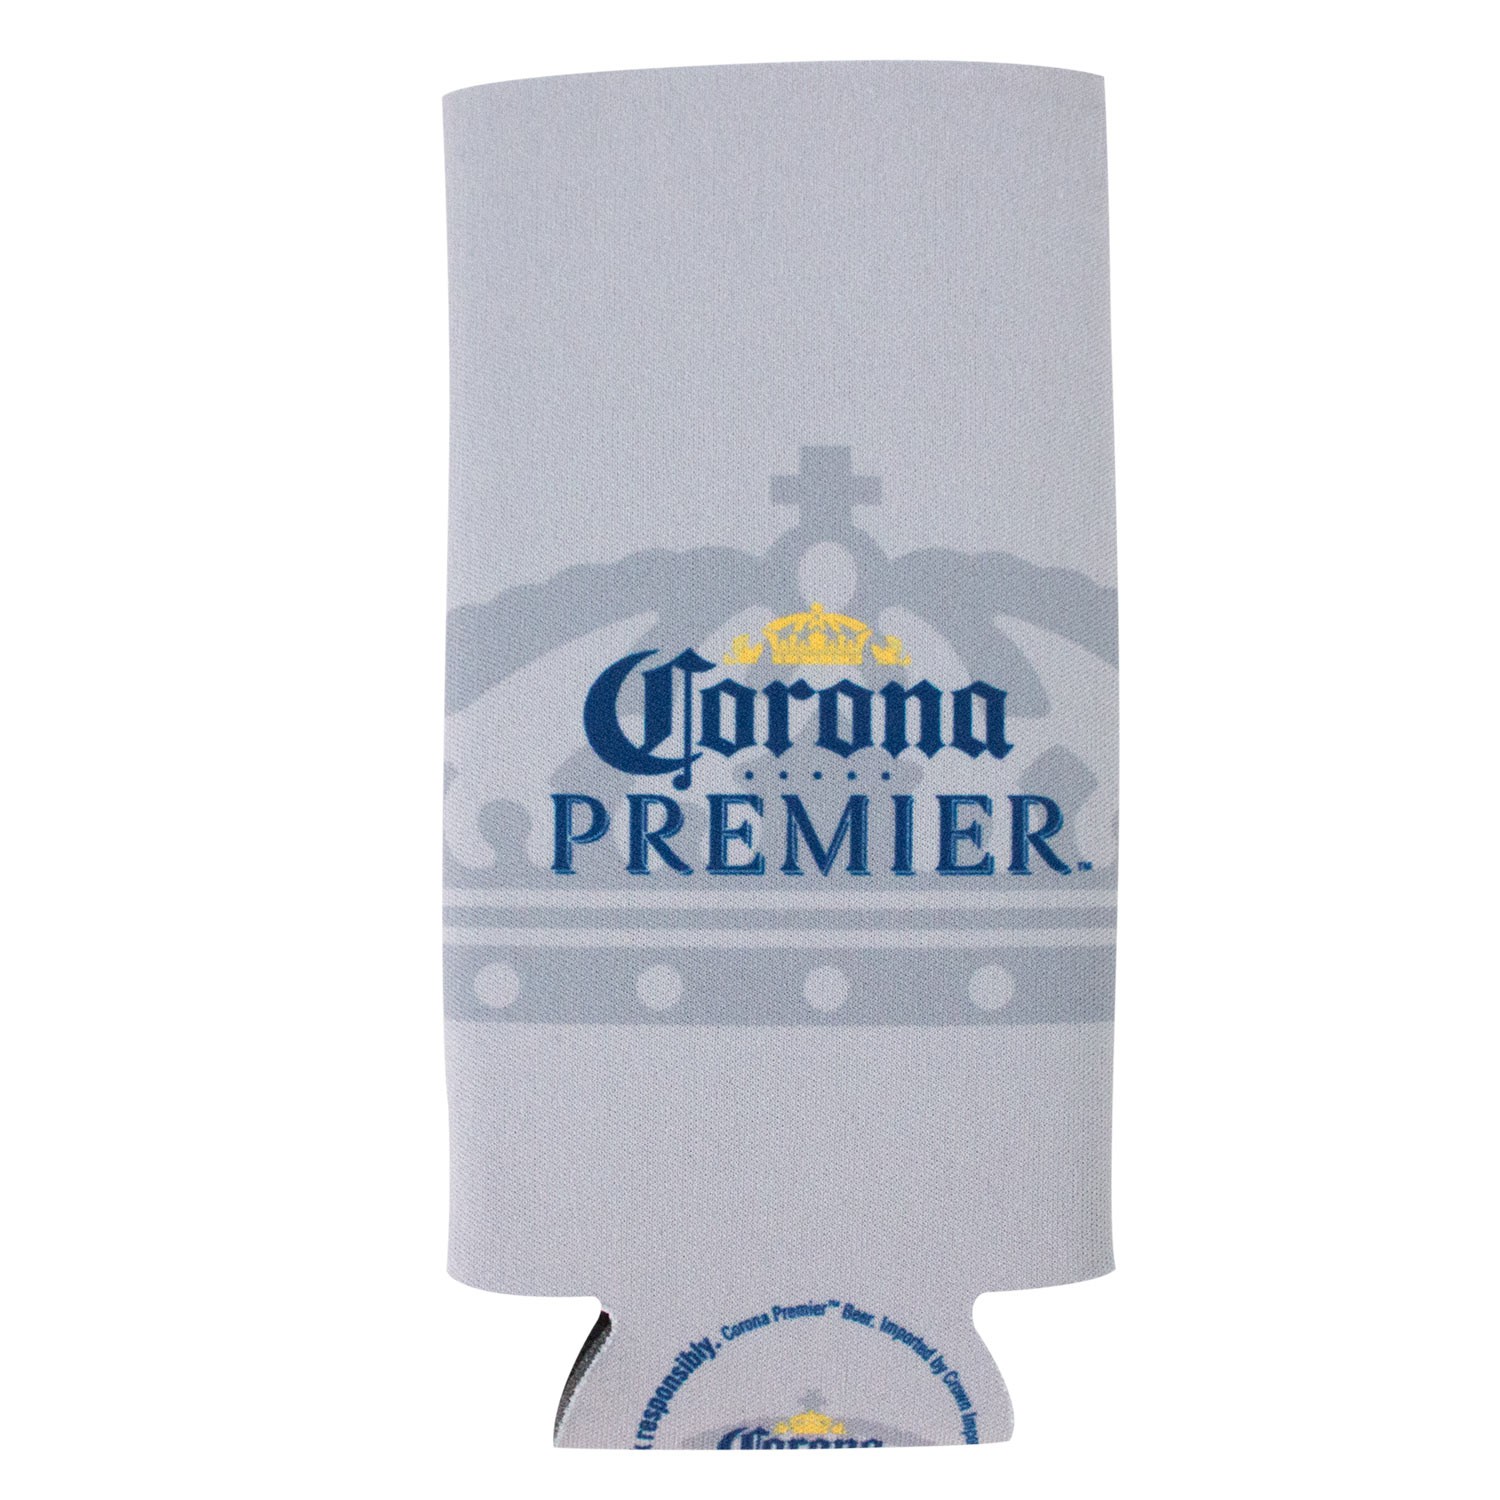 Corona Premier 24oz Can Cooler